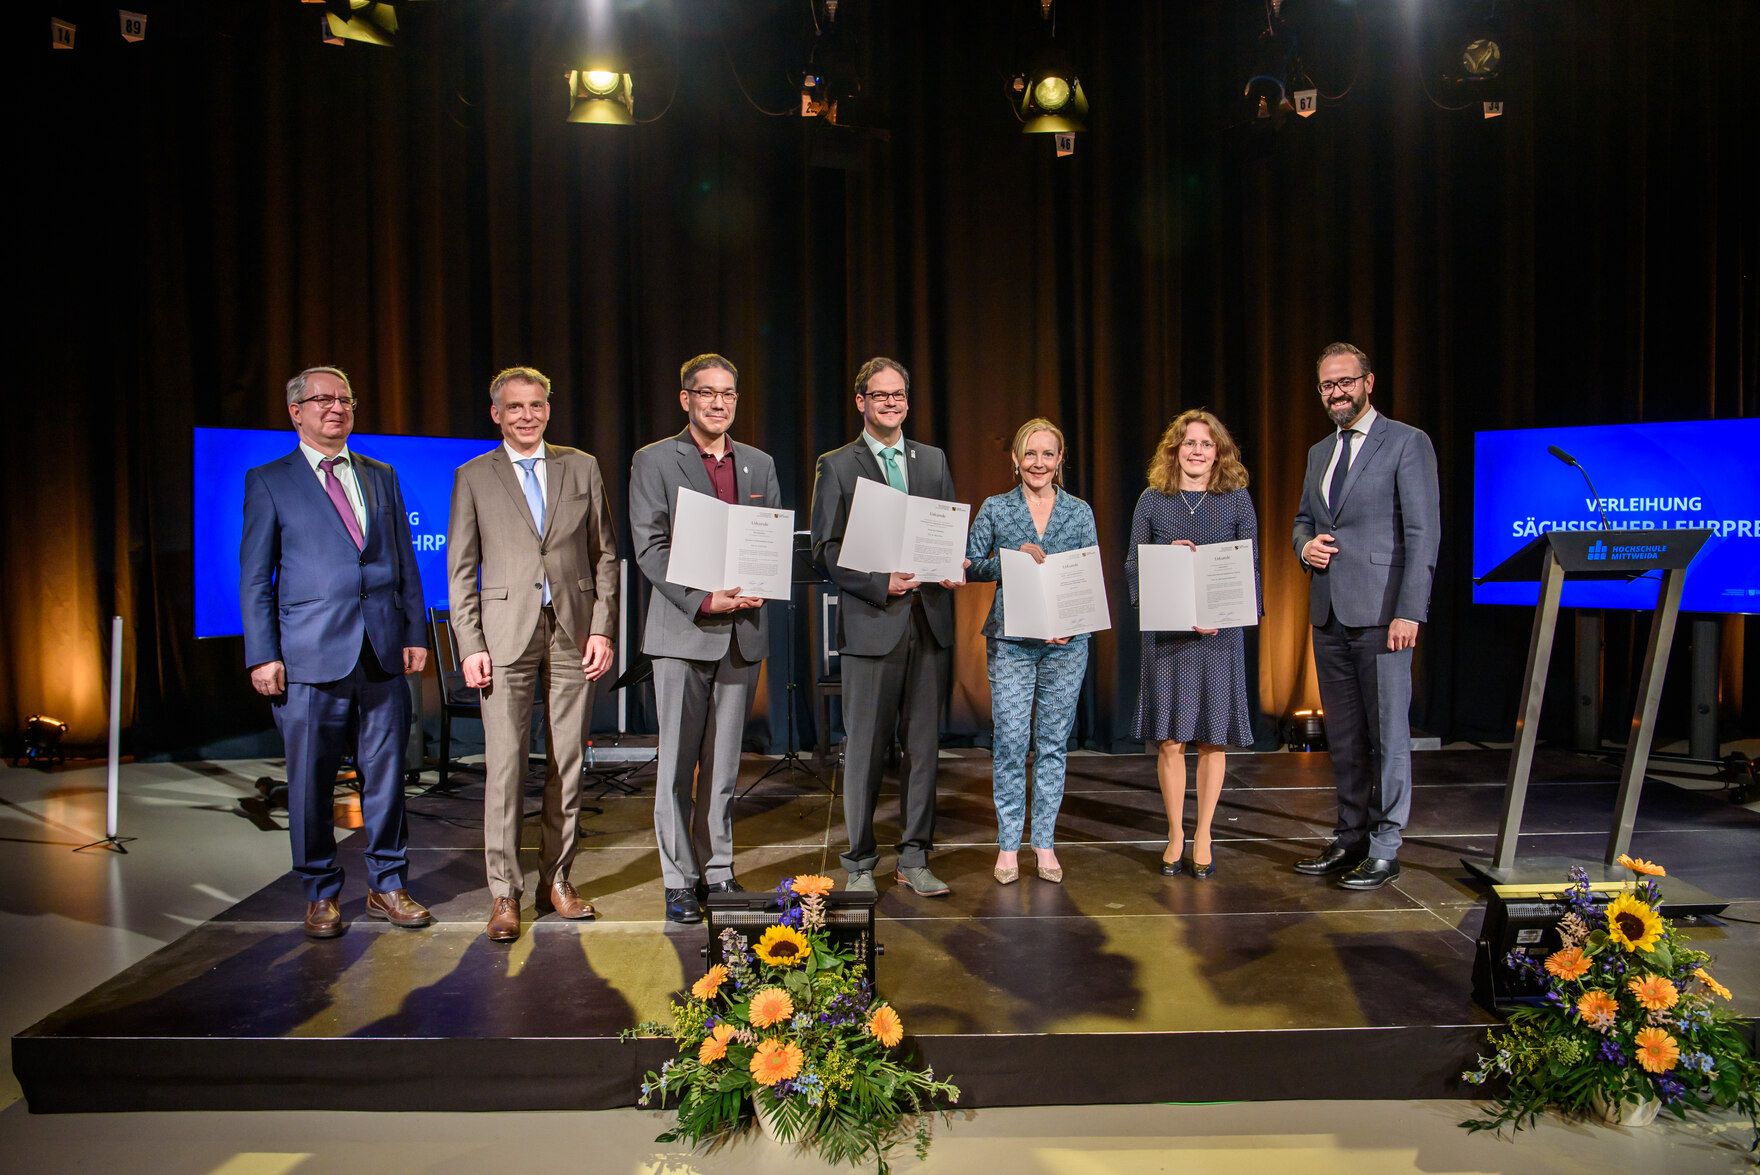 Gäste bei der Verleihung des Sächsischen Lehrpreises am 1. November 2018. 